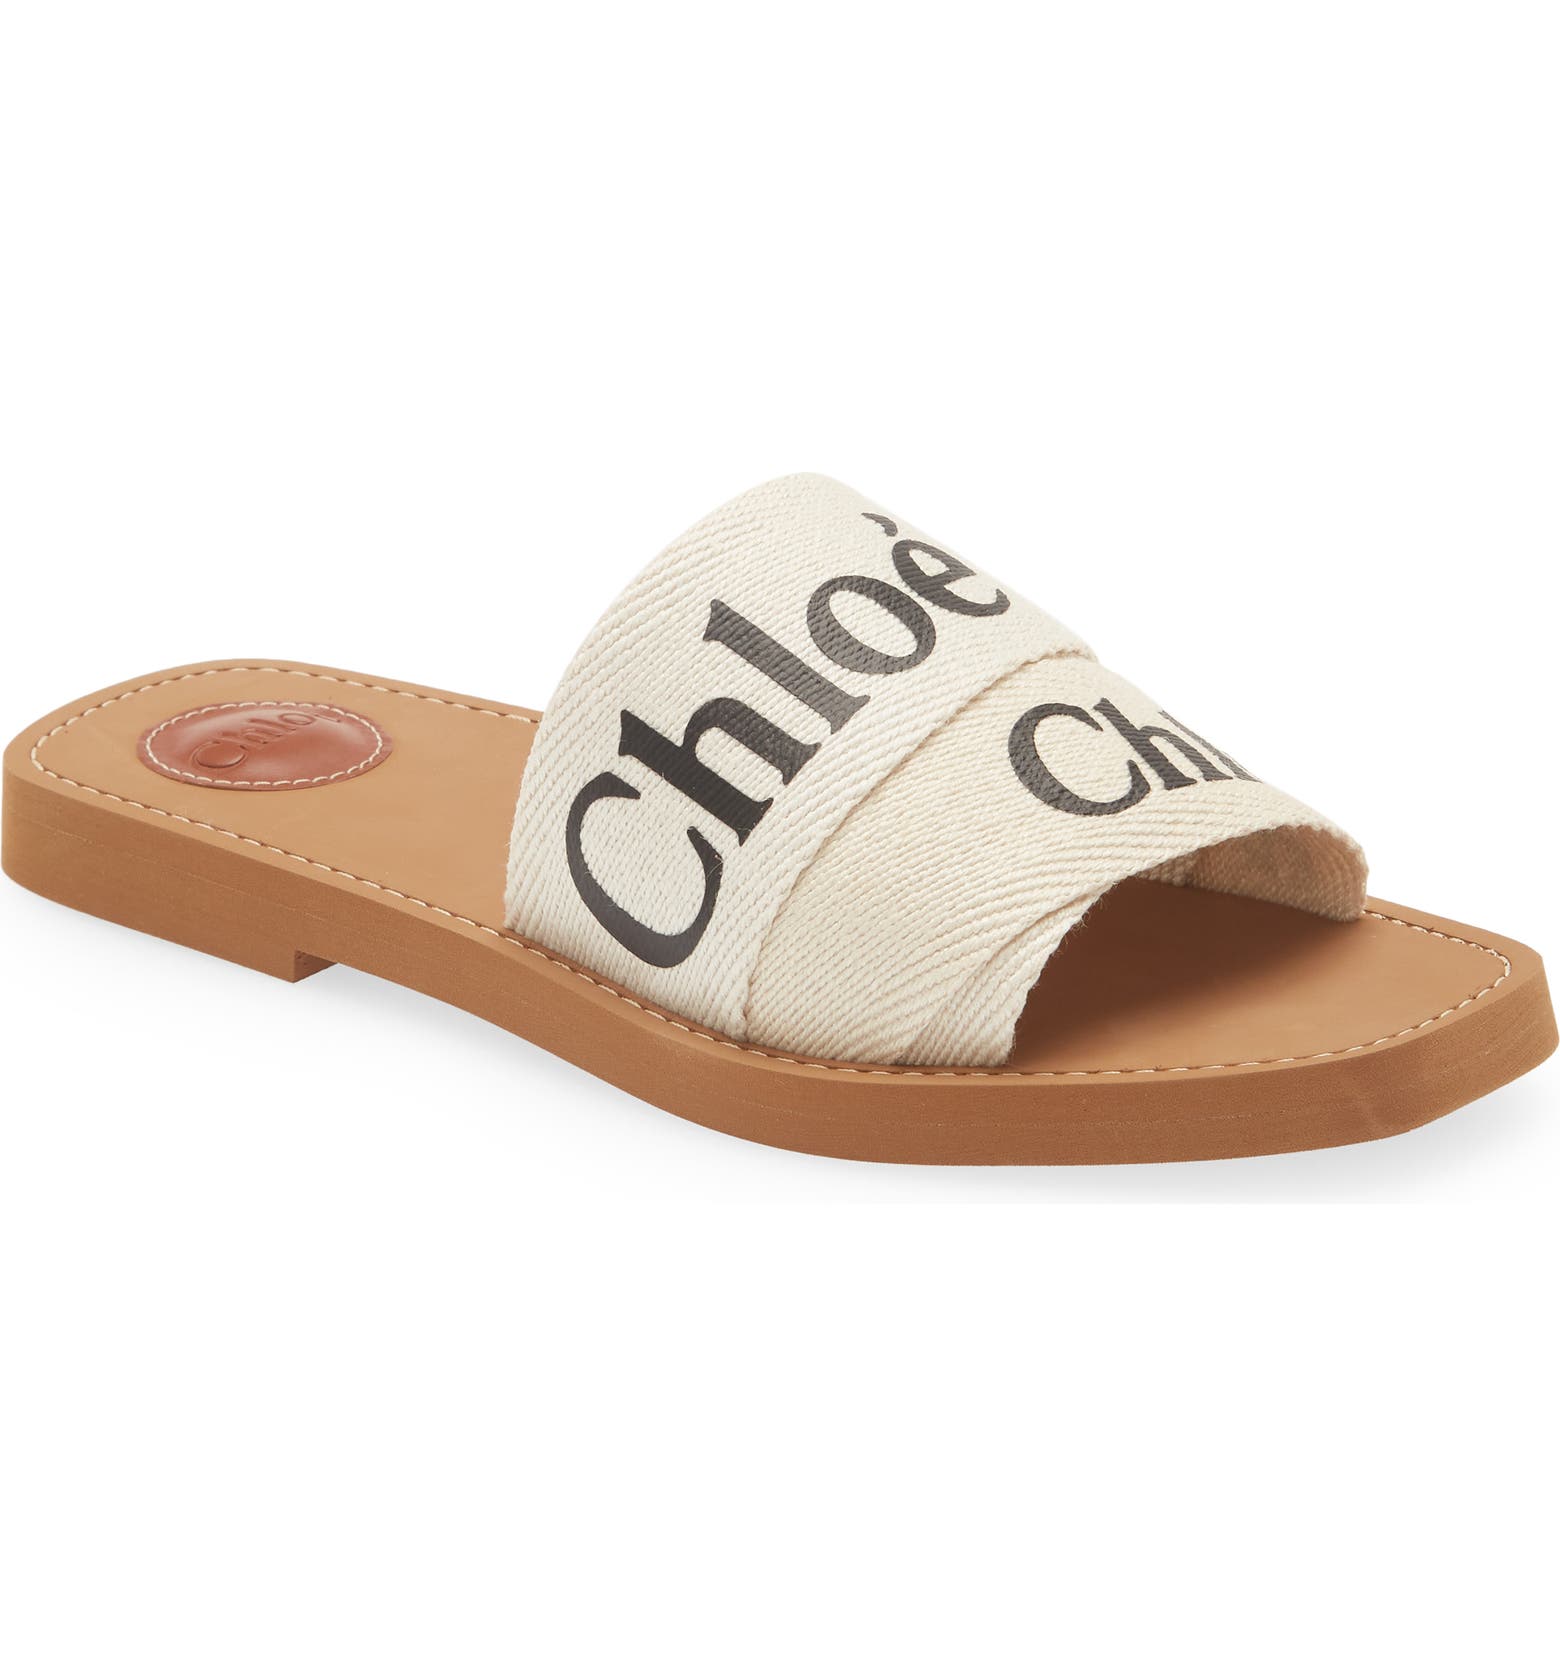 Chloe Woody slide sandals